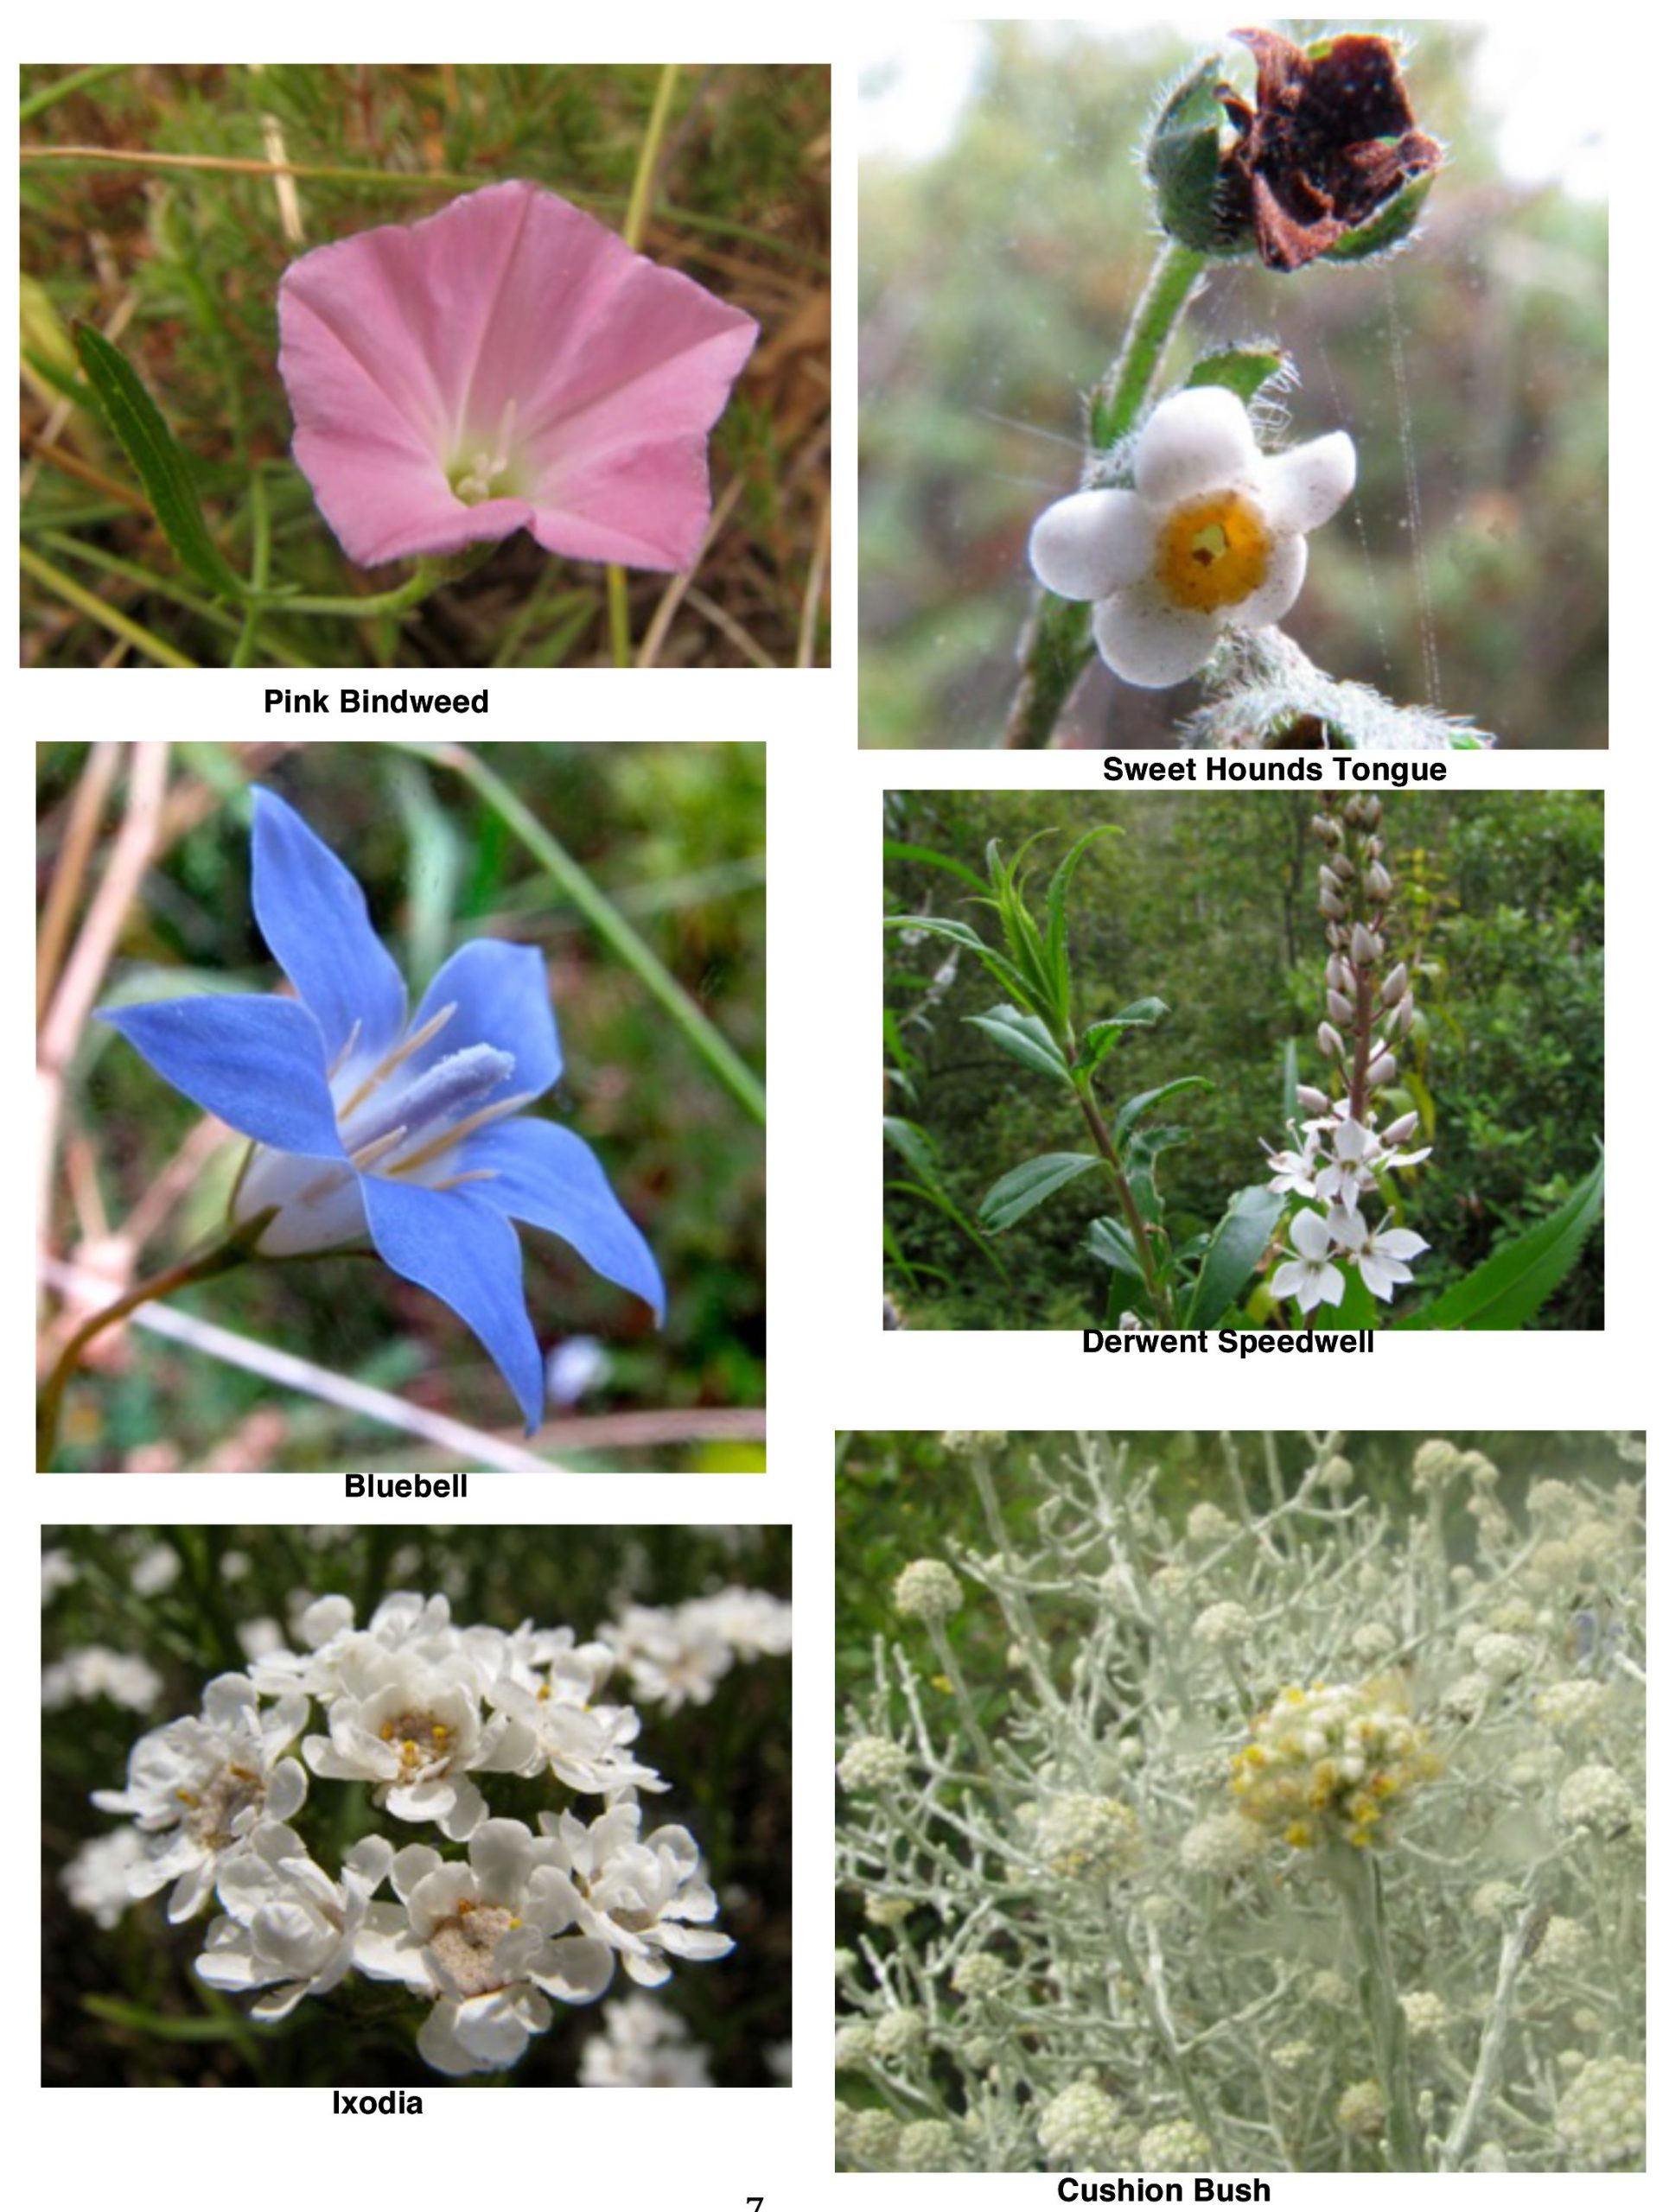 Flora images